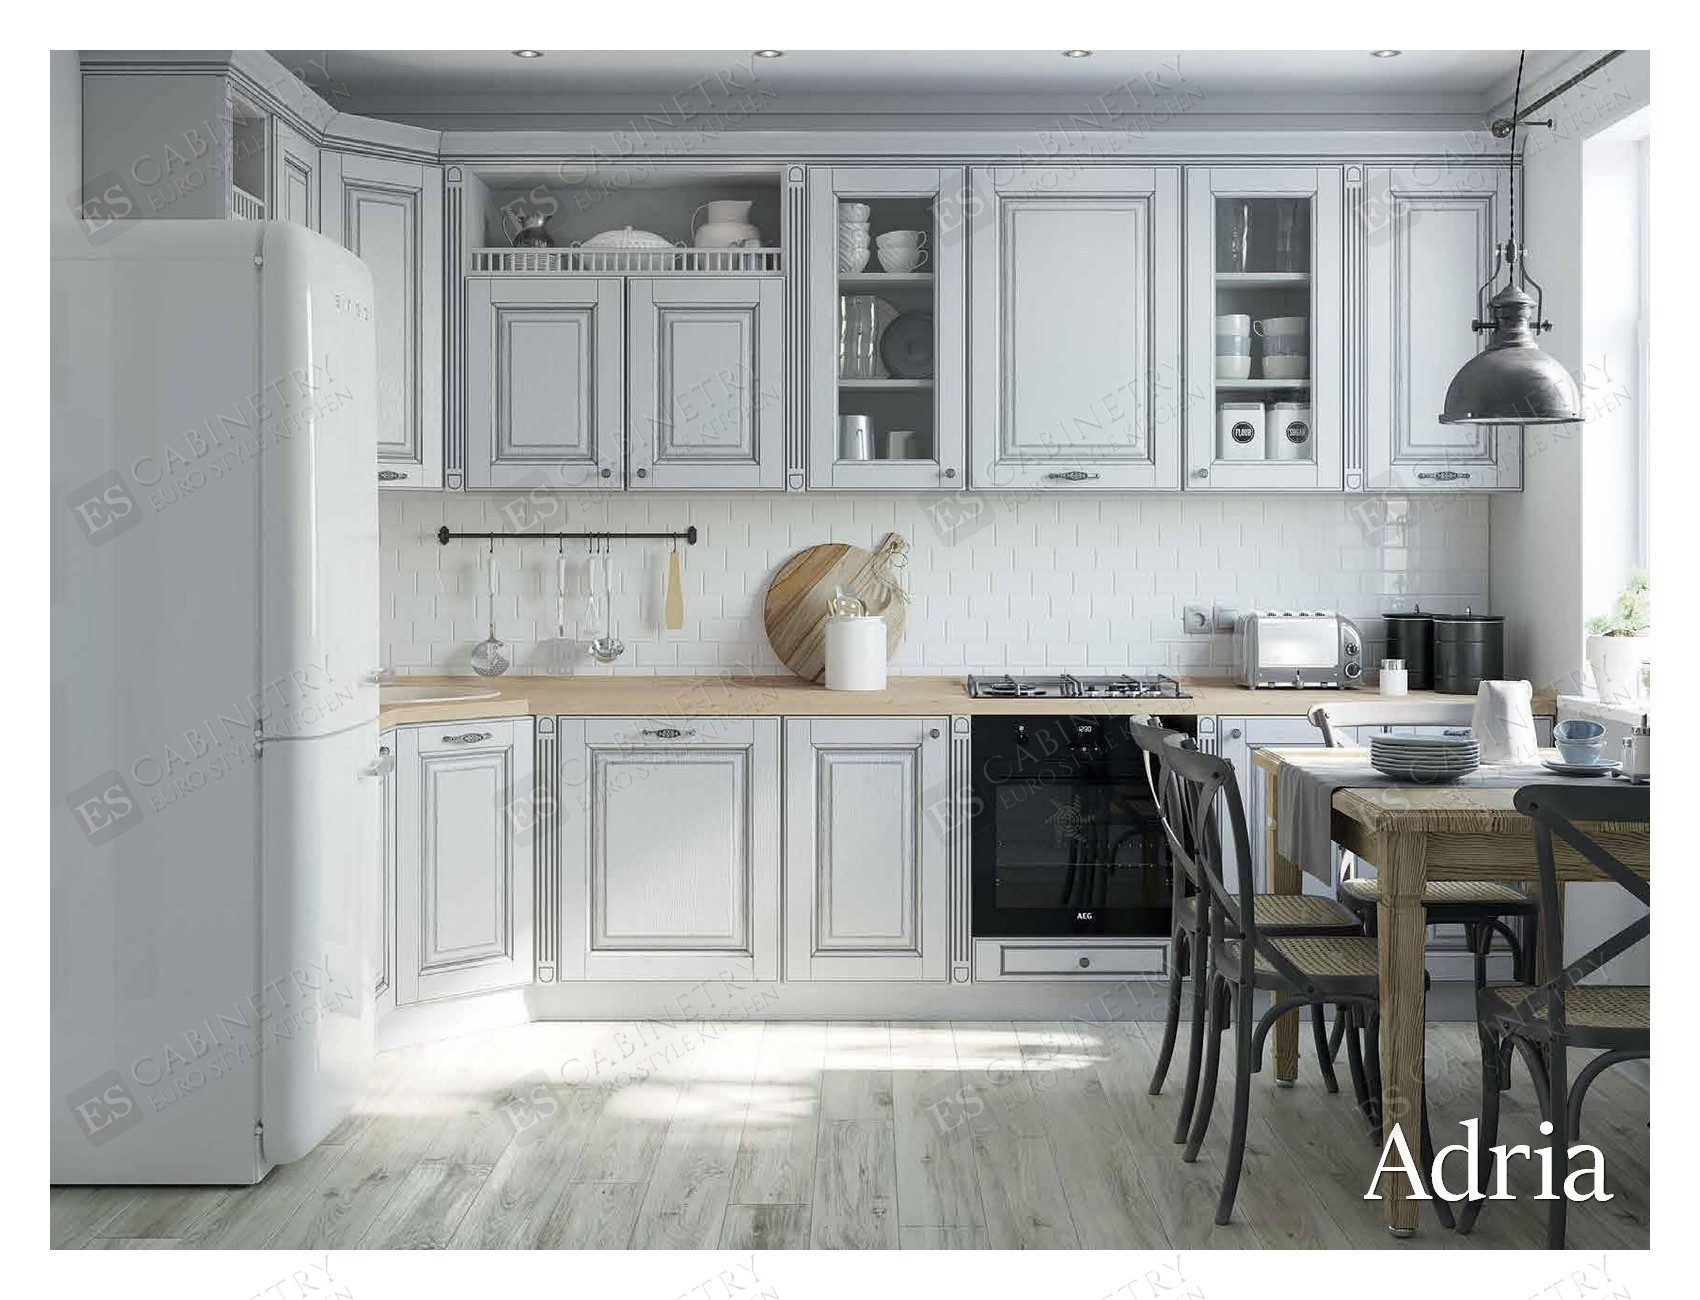 Adria | European style kitchen design